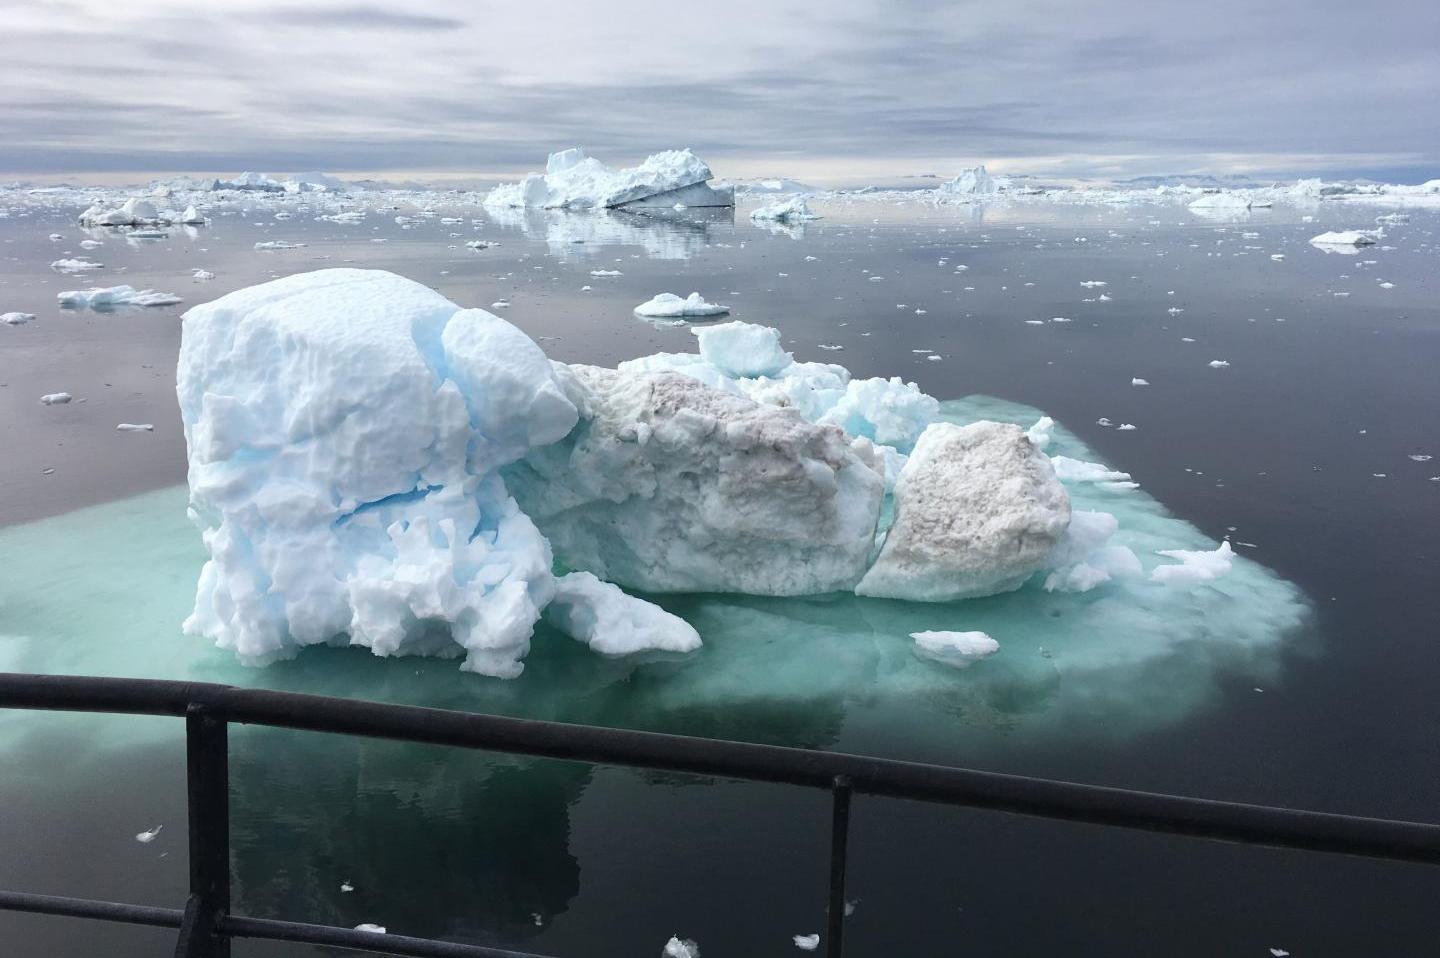 Սառույցների հալչելը կհանգեցնի անկանխատեսելի հետեւանքների Երկրի կլիմայի համար․ գիտնականներ